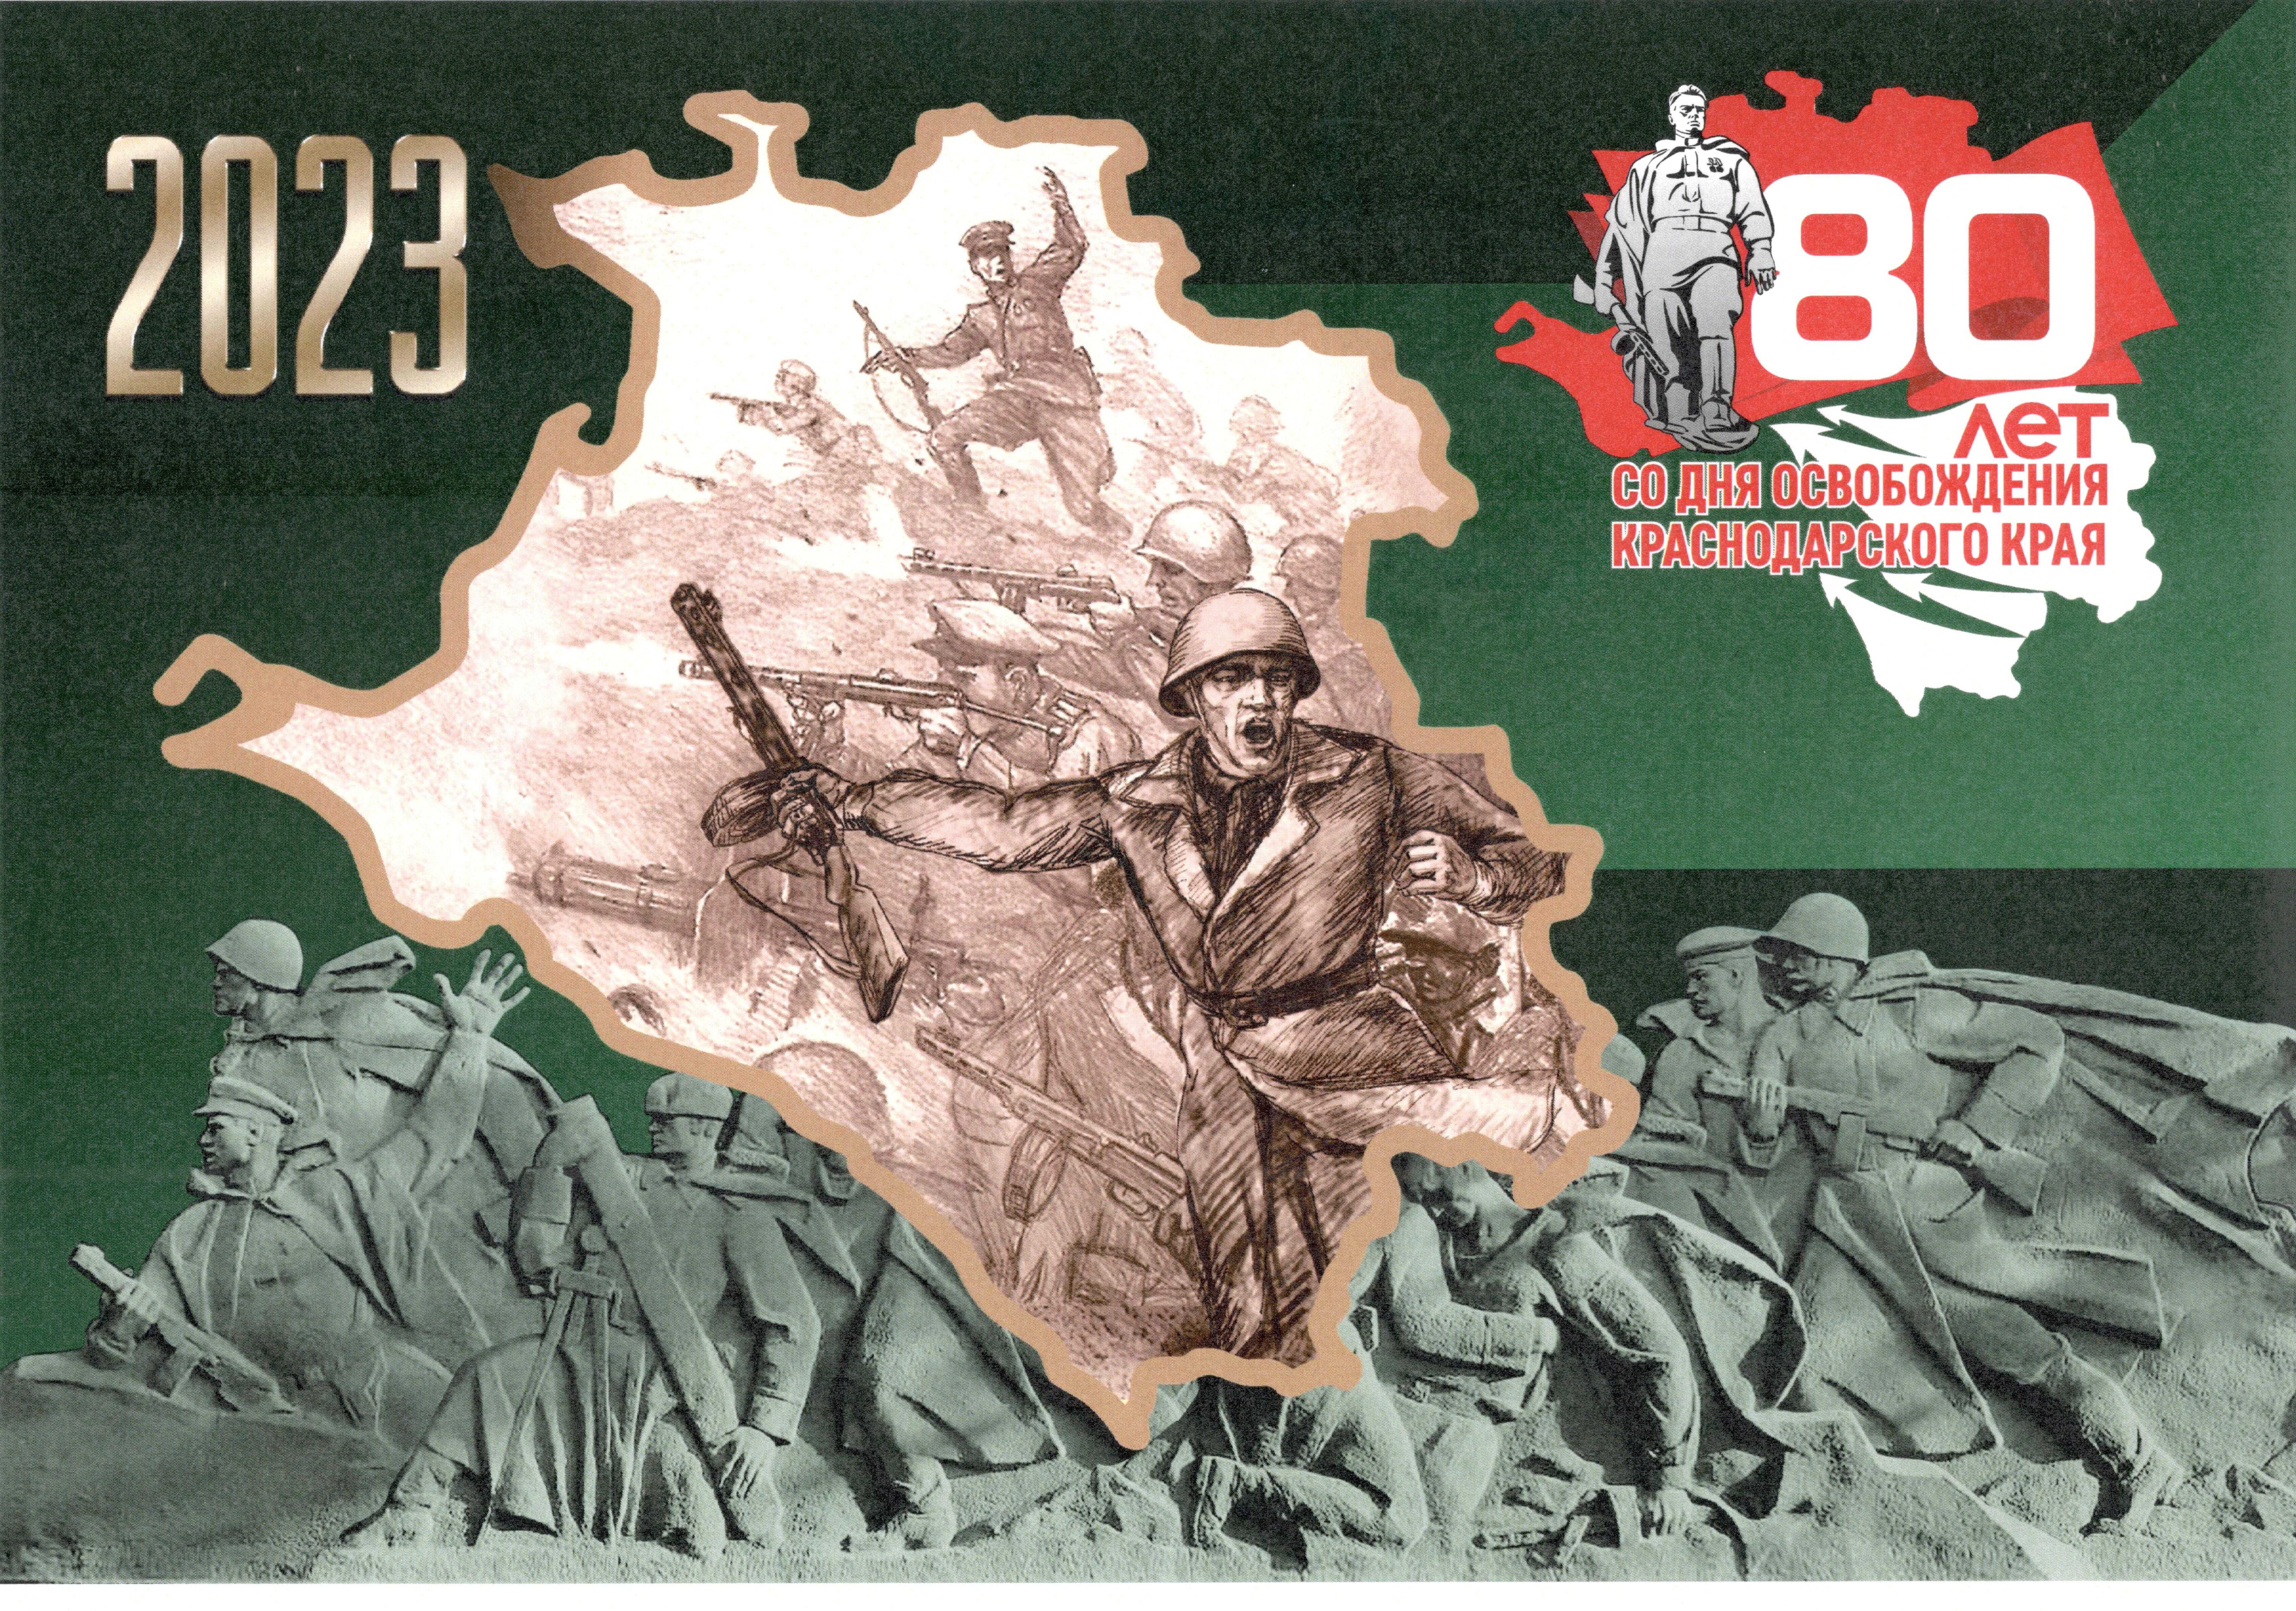 80 лет со дня освобождения Краснодарского края от немецко-фашистских захватчиков и завершения битвы за Кавказ